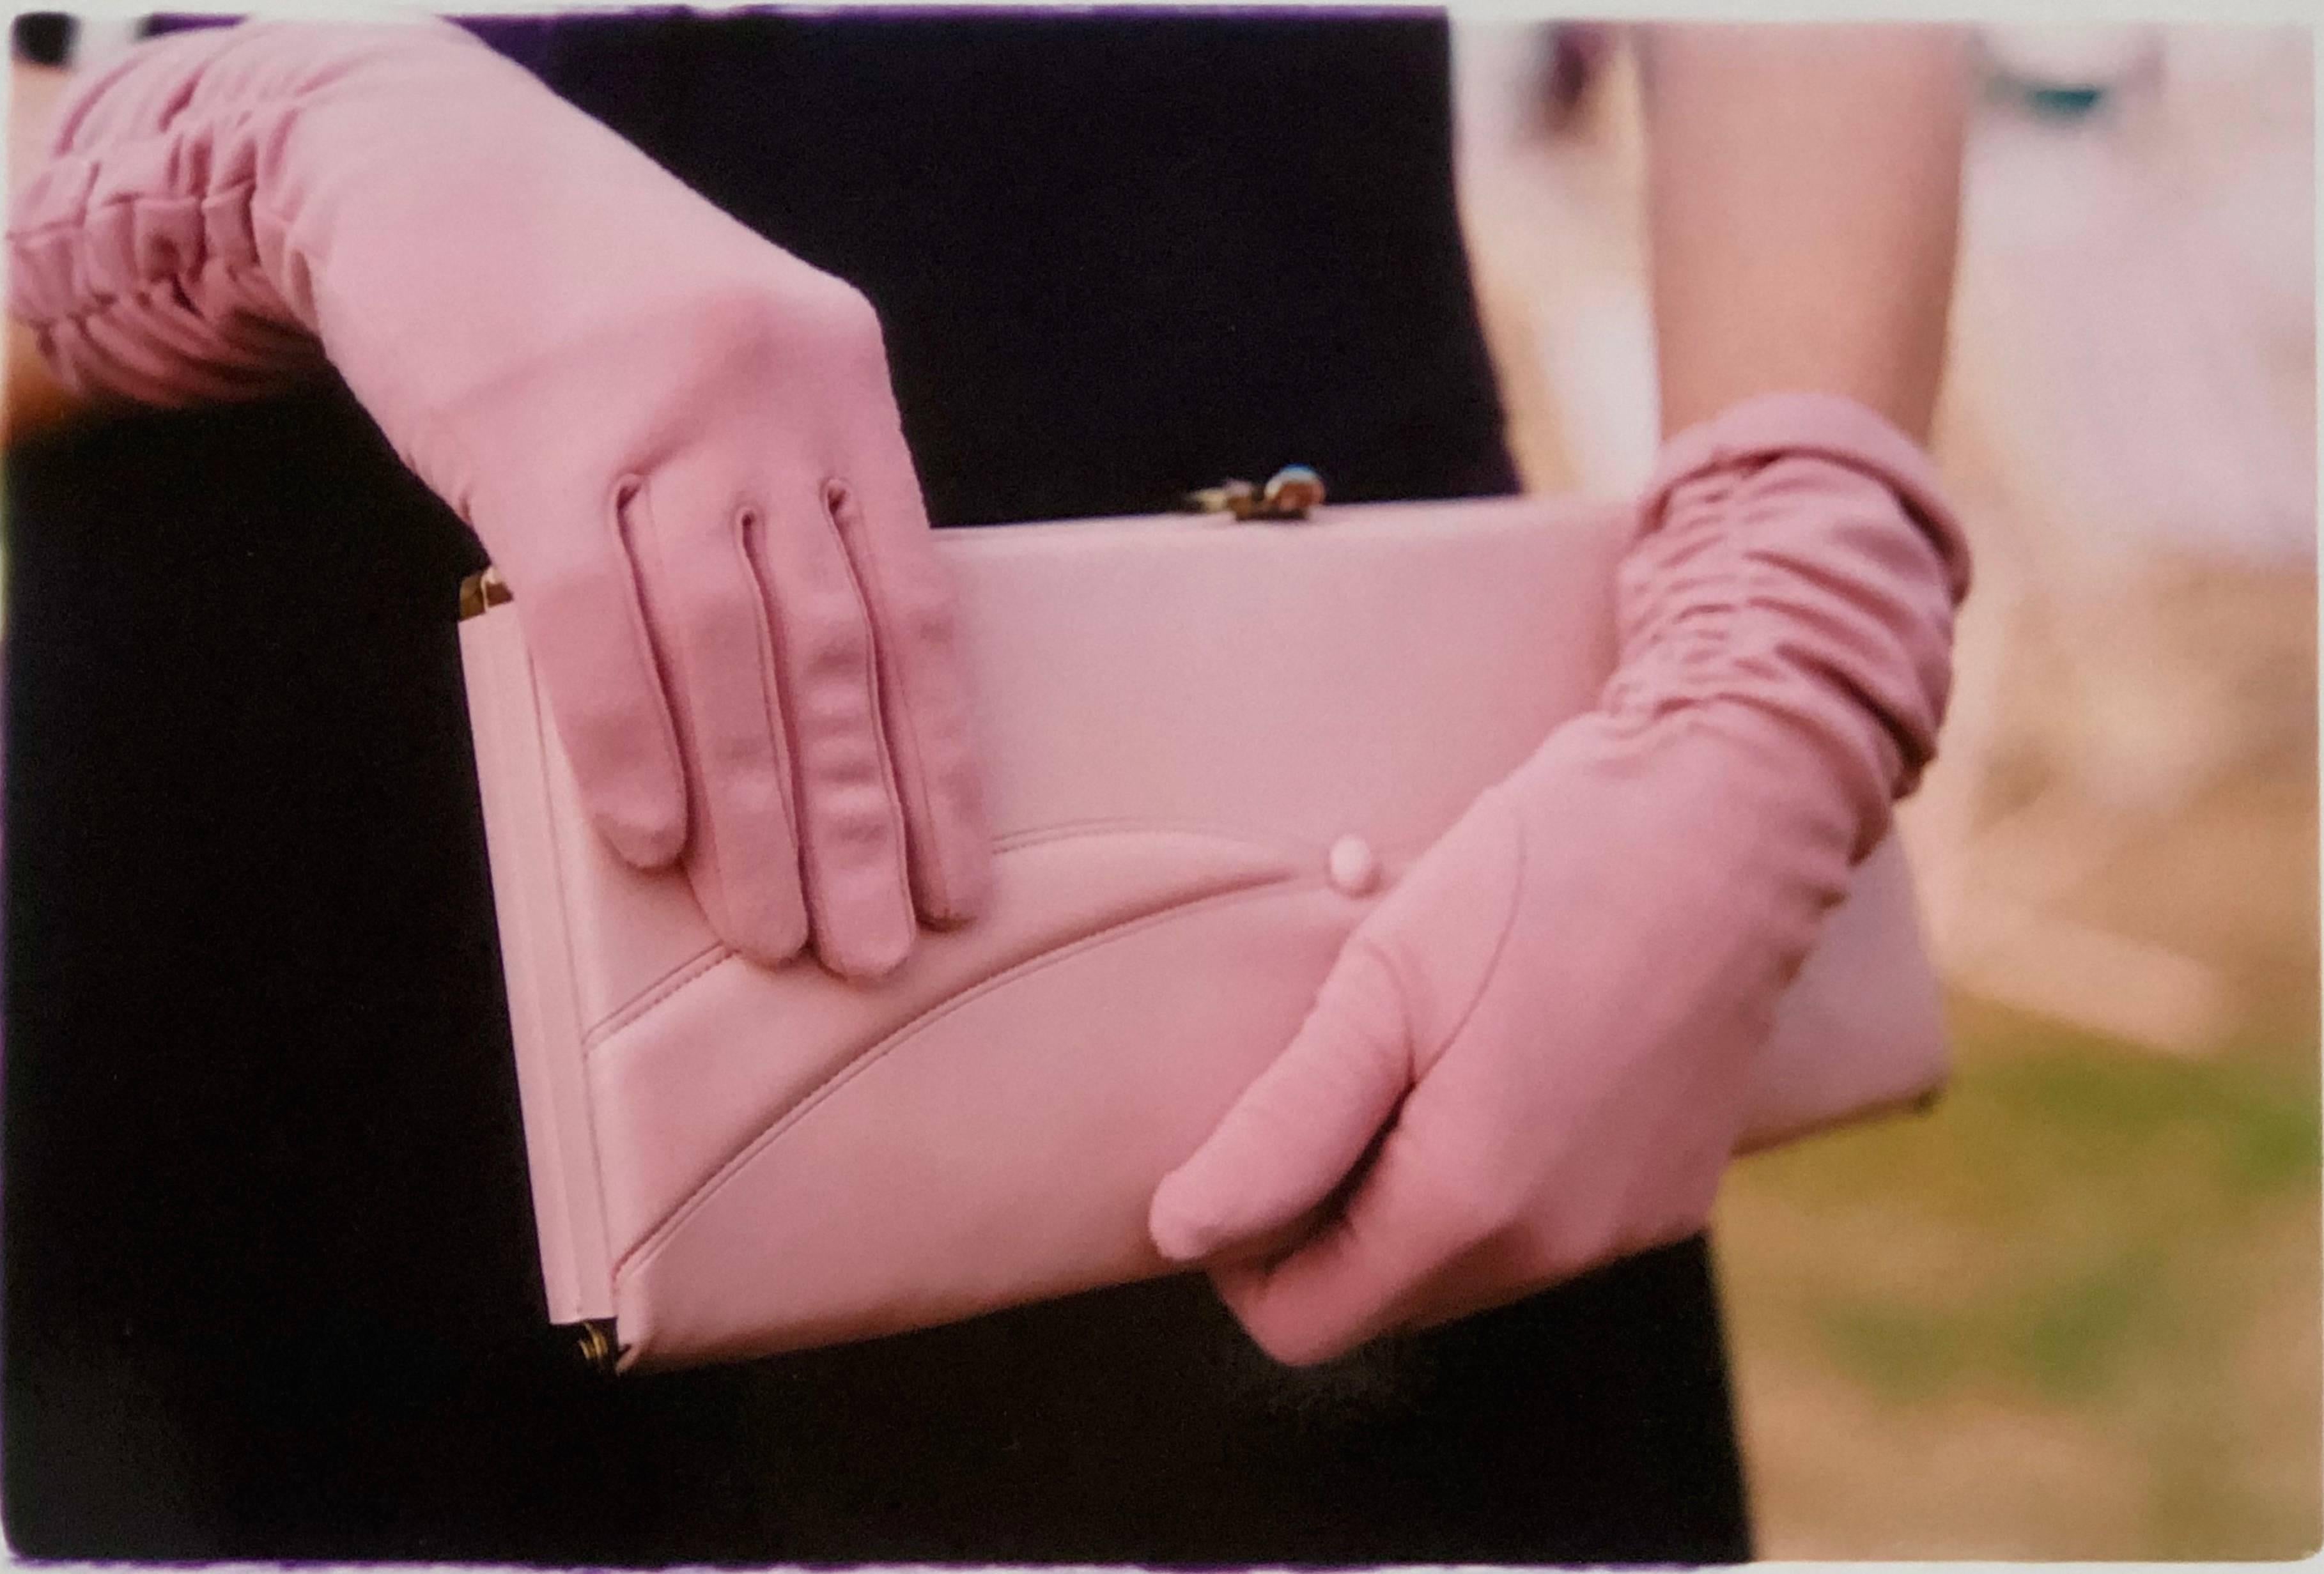 Rosa Handschuhe, Goodwood, Chichester - Feminine Mode, Farbfotografie